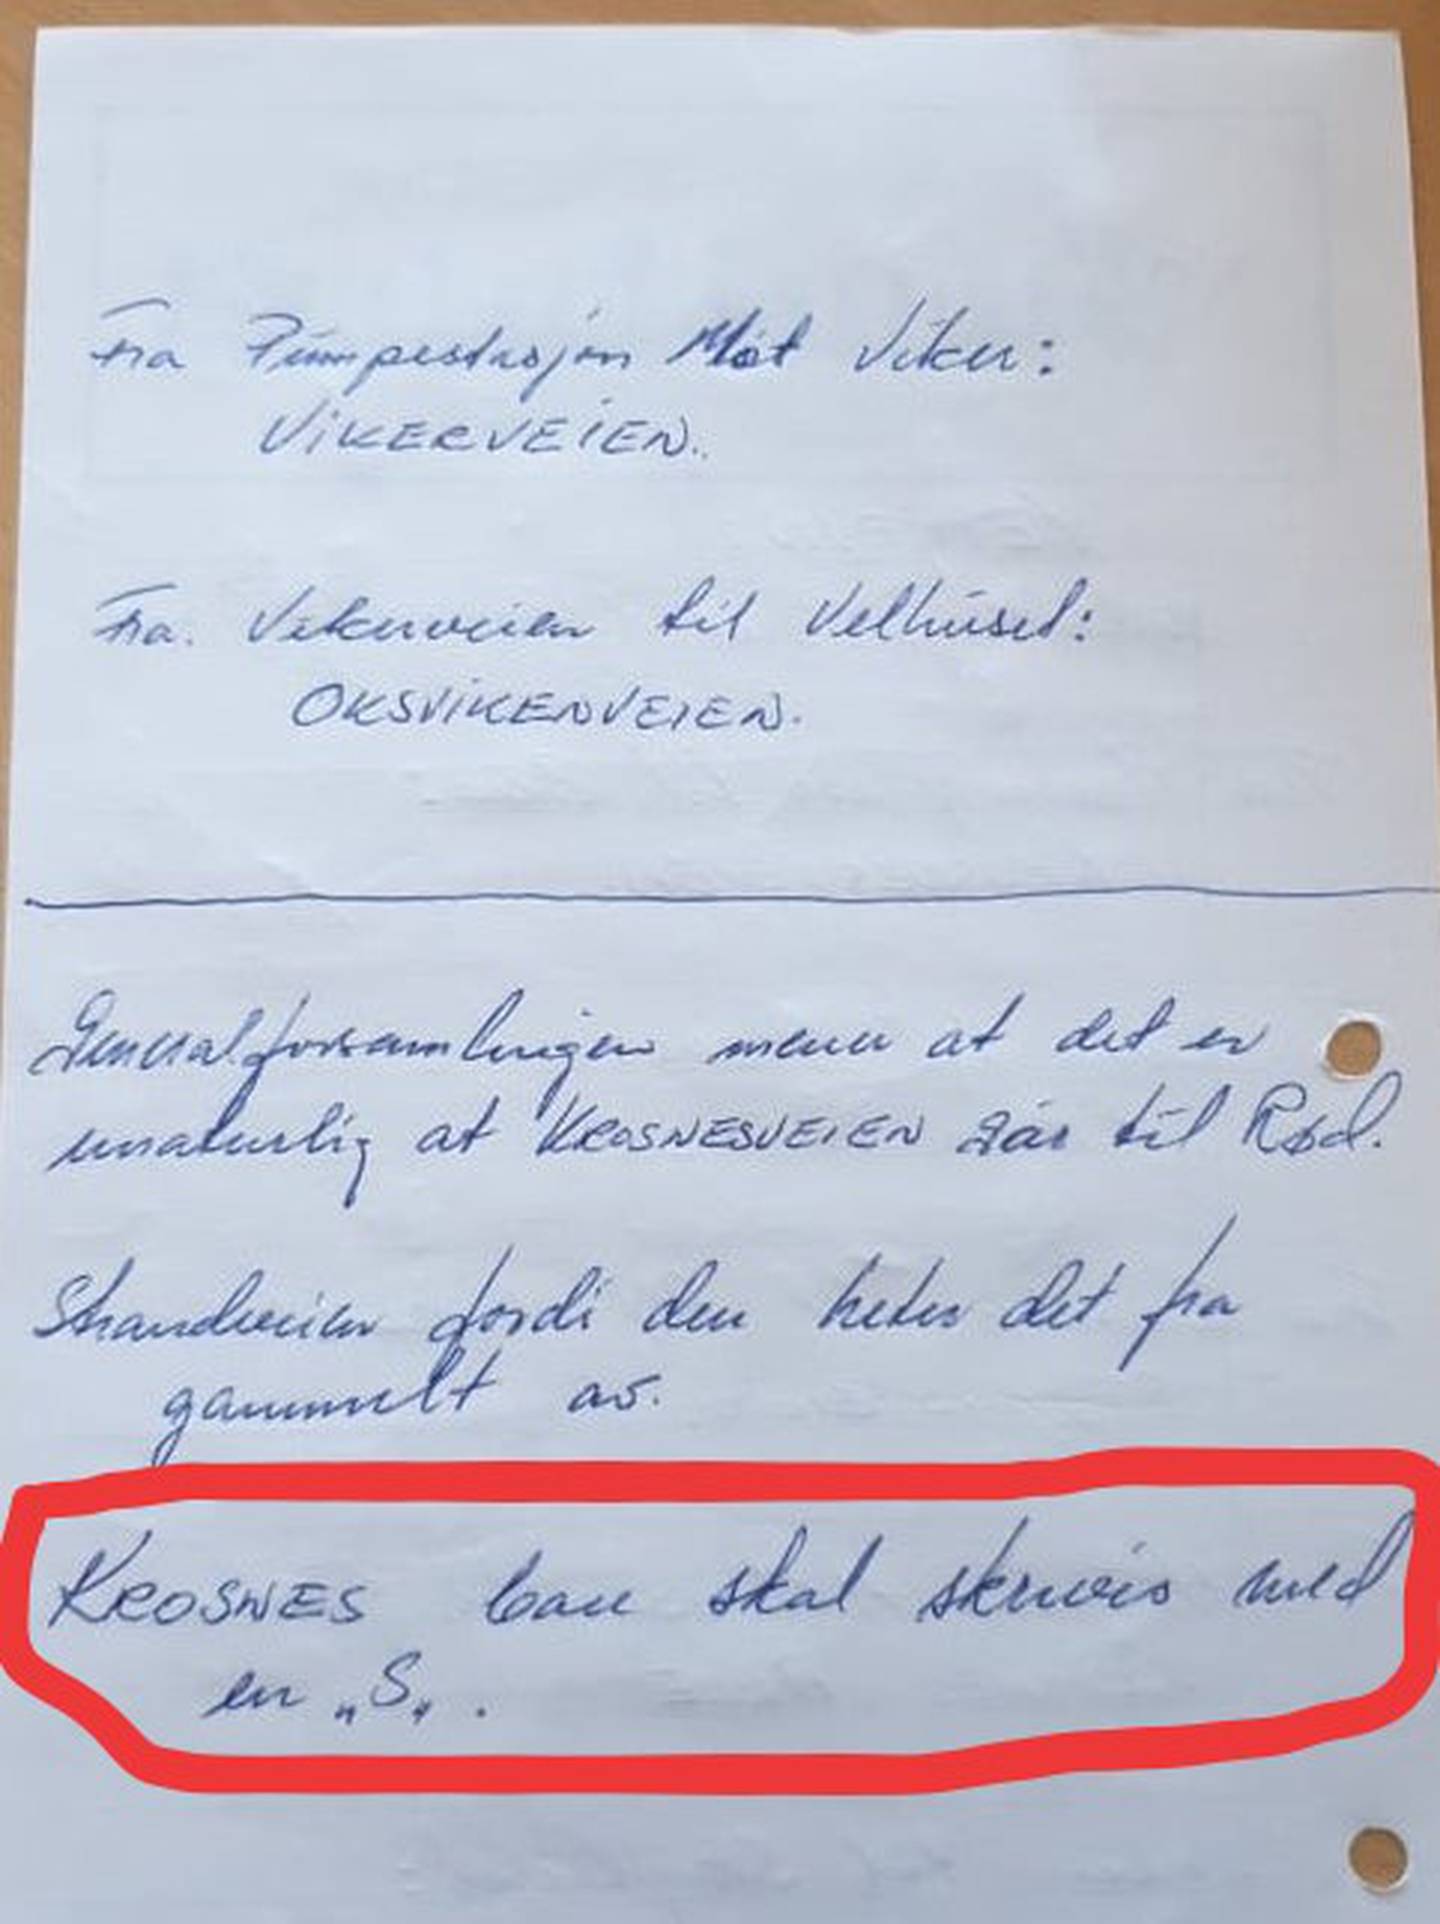 I vedtaket fra velforeningas generalforsamling i 1981 er det framhevet at Krosnes bare skal skrives med én s. Kartverket er ikke enig. Redaksjonen har ringet rundt setningen.